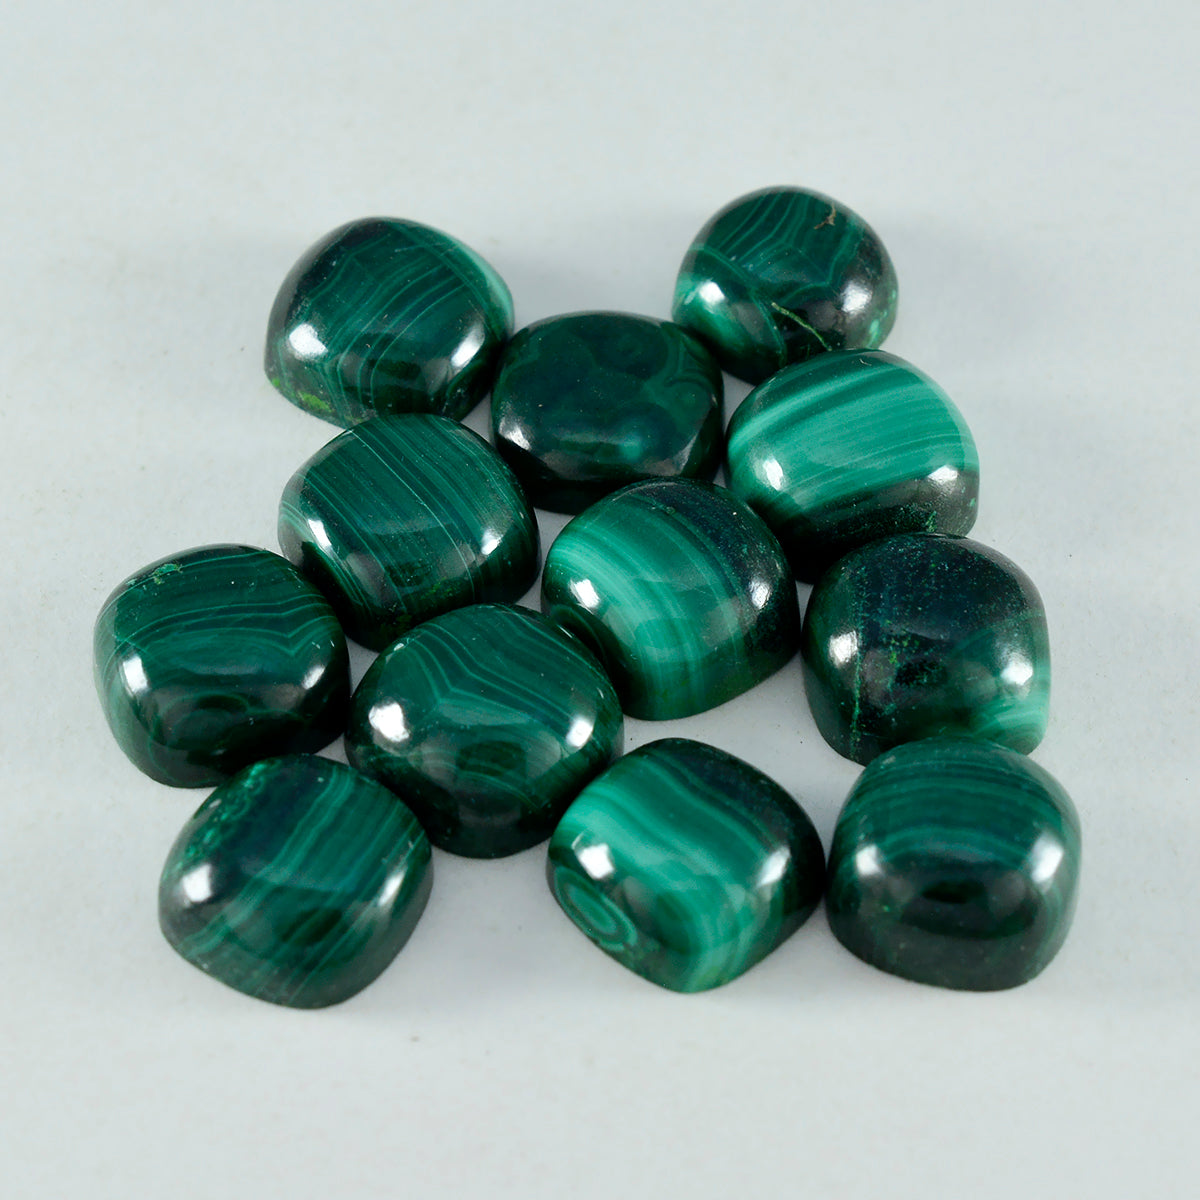 Riyogems 1 pieza cabujón de malaquita verde 5x5 mm forma de cojín gemas de calidad sorprendente